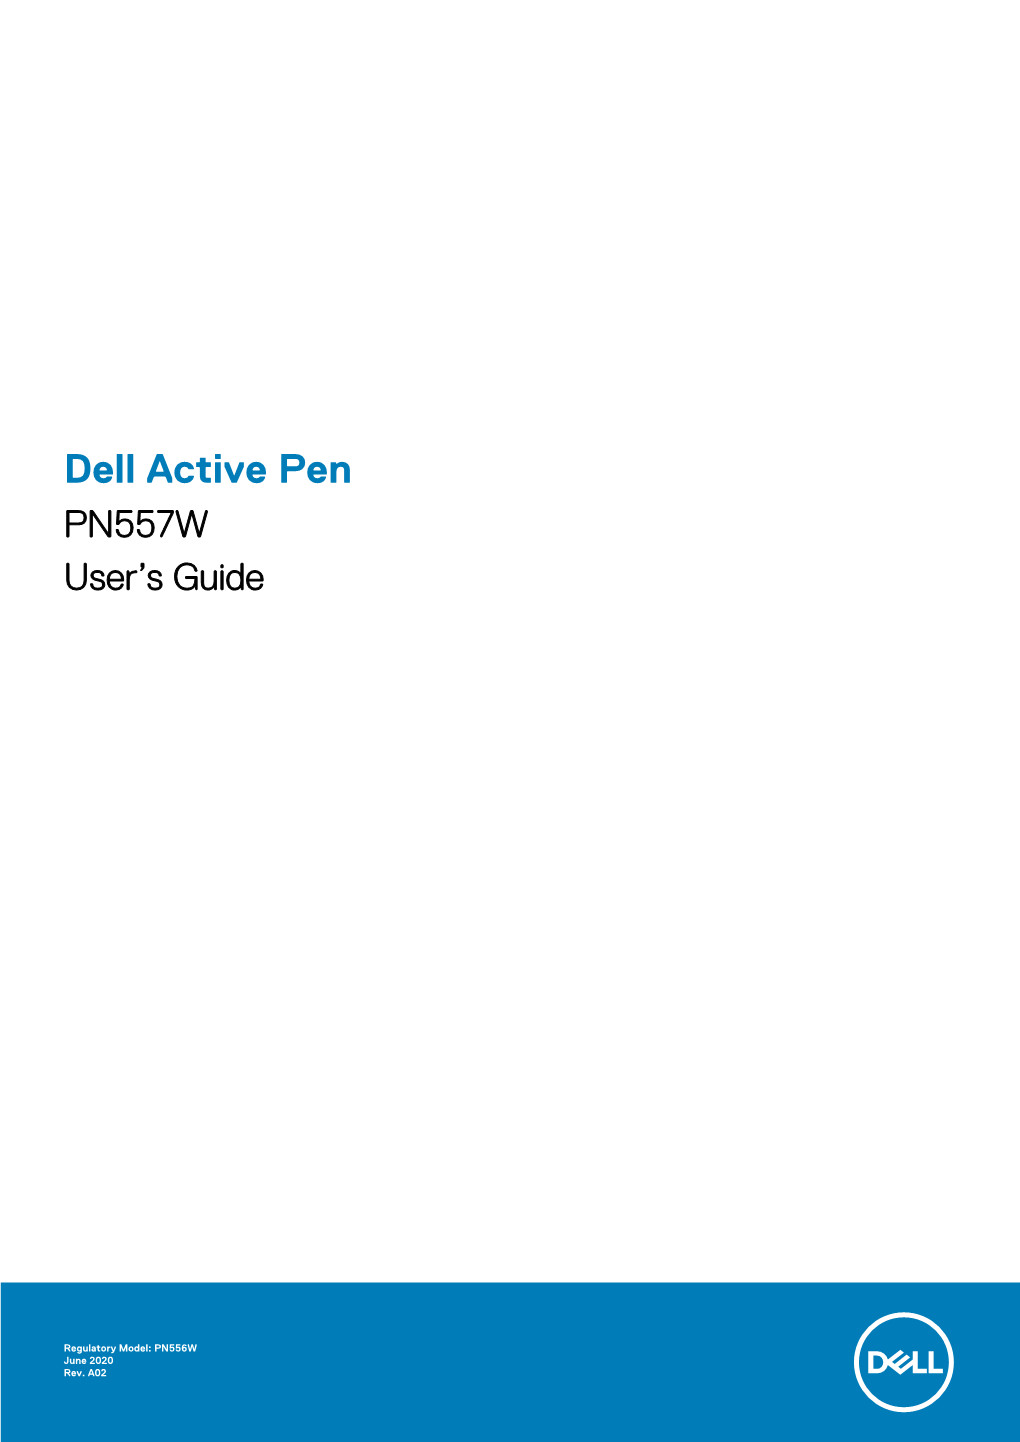 Dell Active Pen PN557W User's Guide